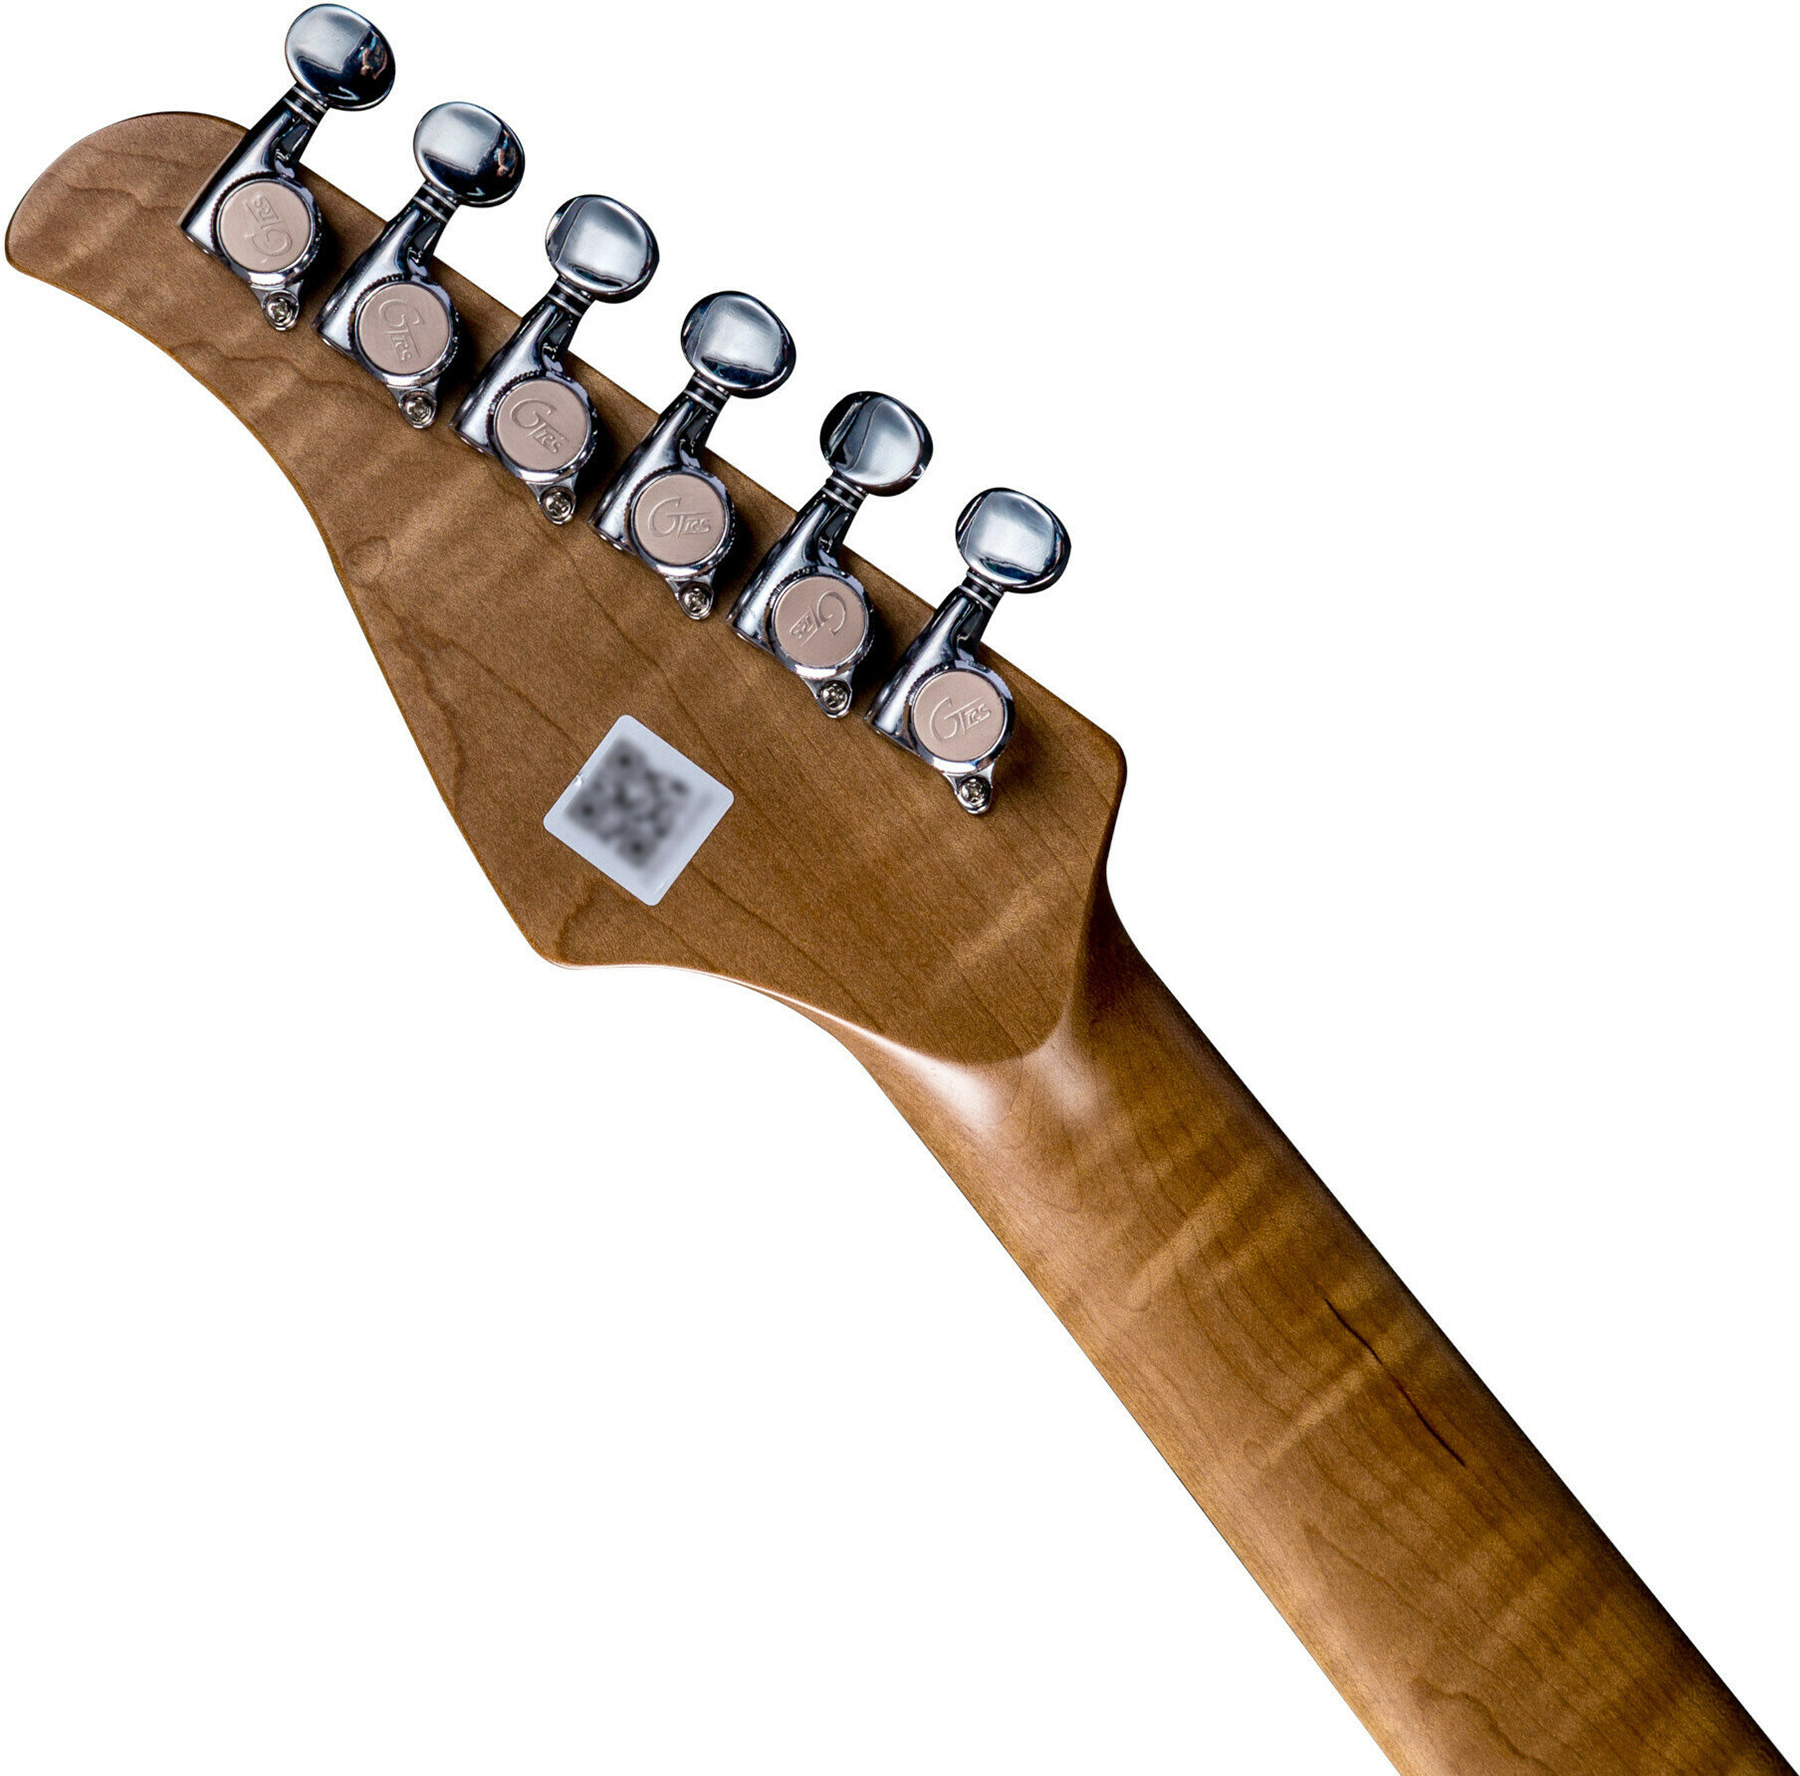 Mooer Gtrs P800 Pro Intelligent Guitar Hss Trem Rw - Dark Night - Modeling guitar - Variation 4